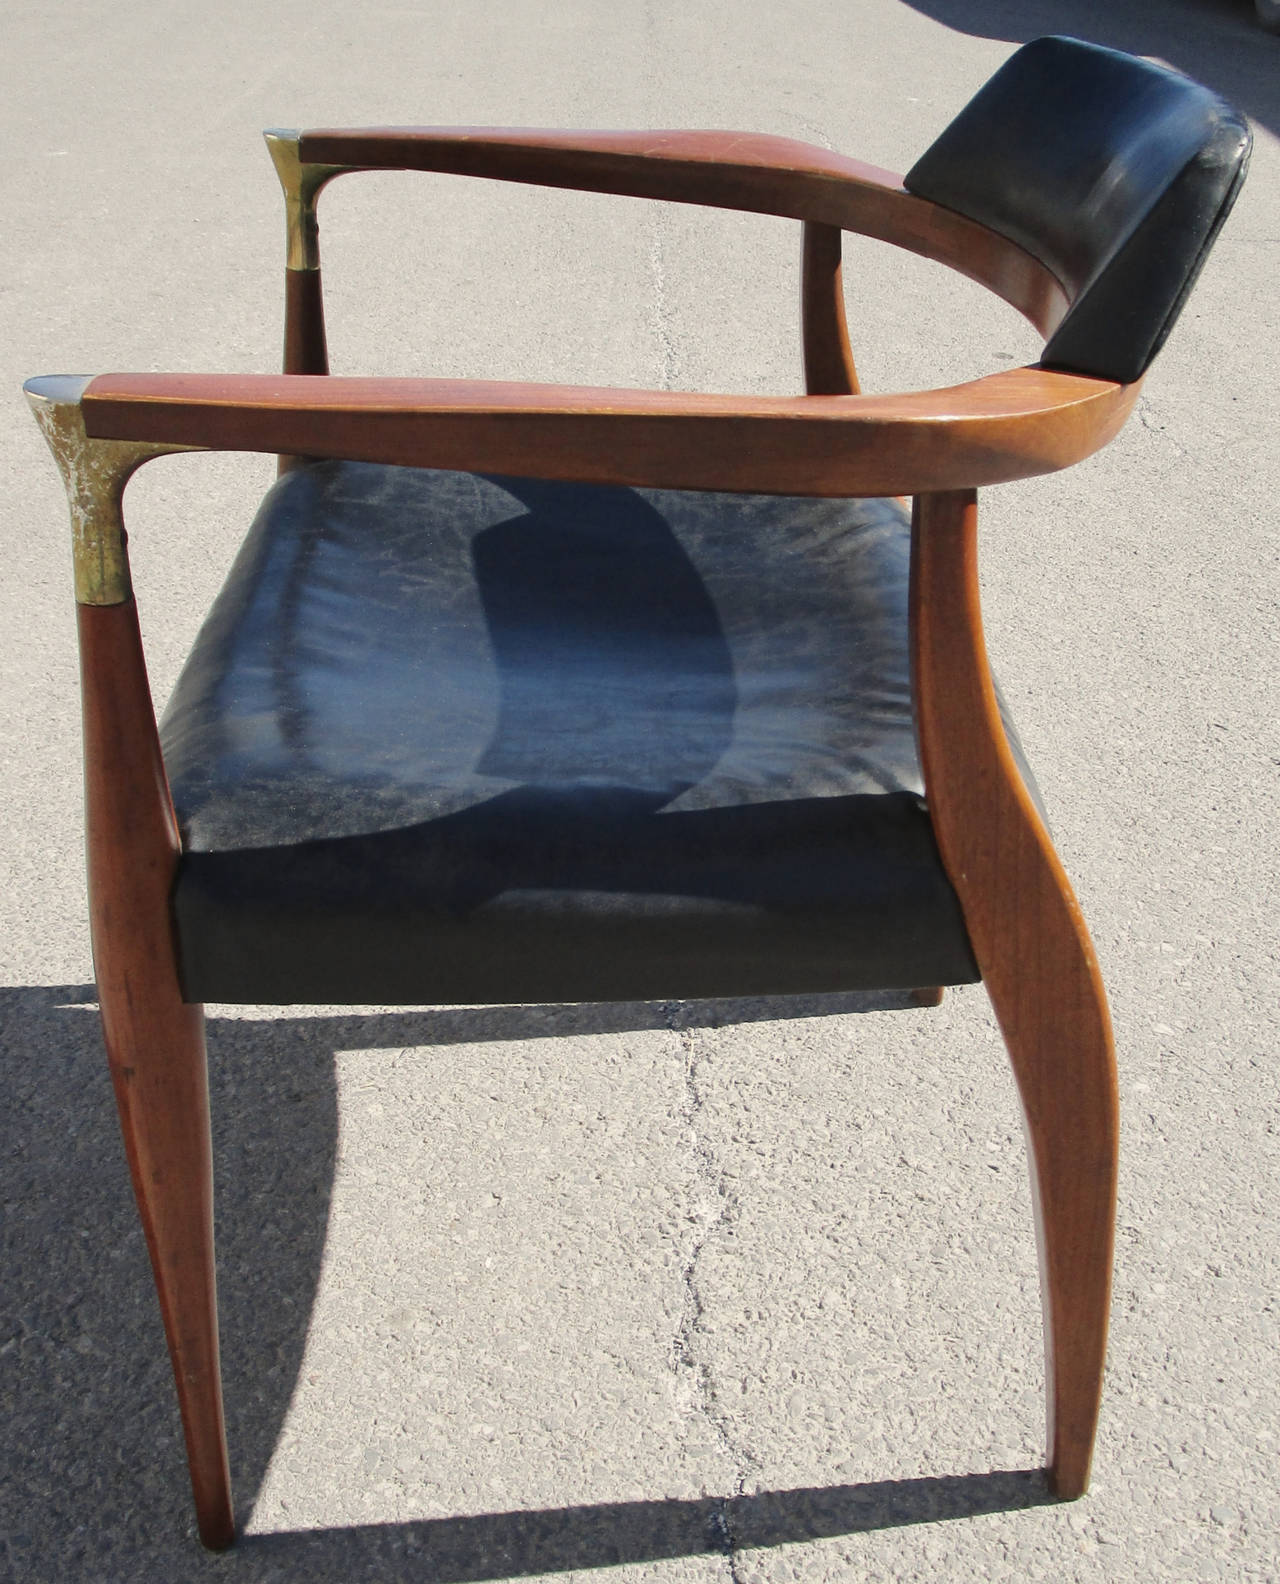 Teak desk chair. Original black vinyl. Wear to metal plating.